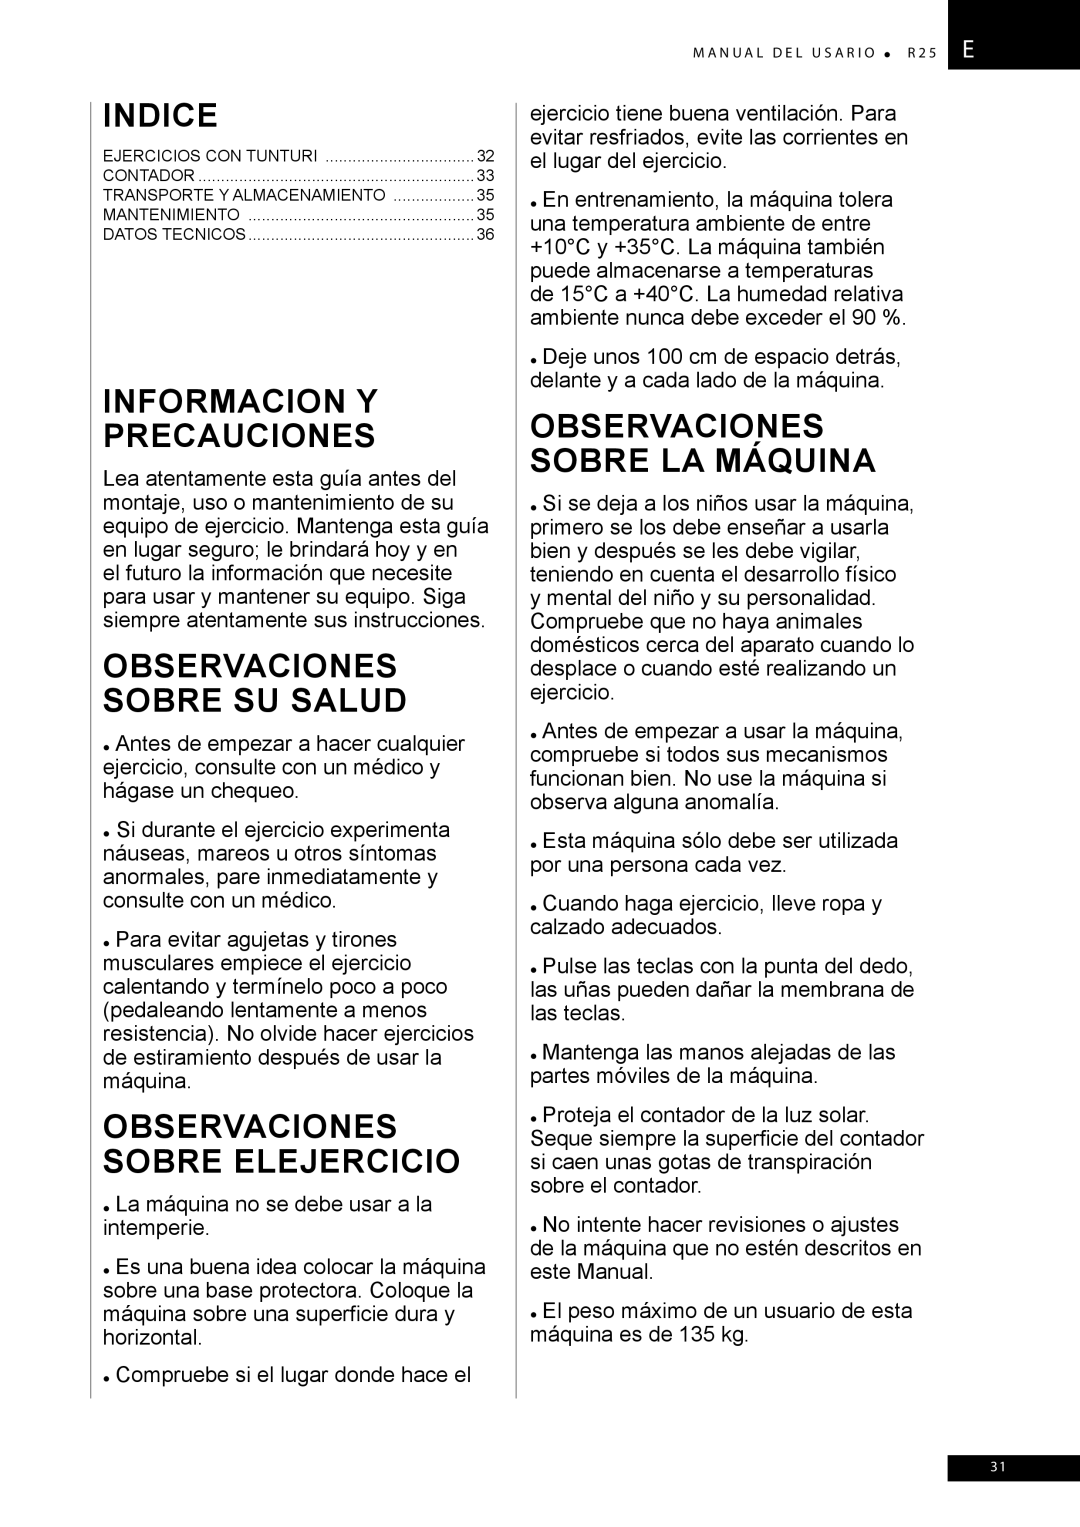 Tunturi R25 owner manual Informacion Y Precauciones, Observaciones Sobre SU Salud, Observaciones Sobre Elejercicio 